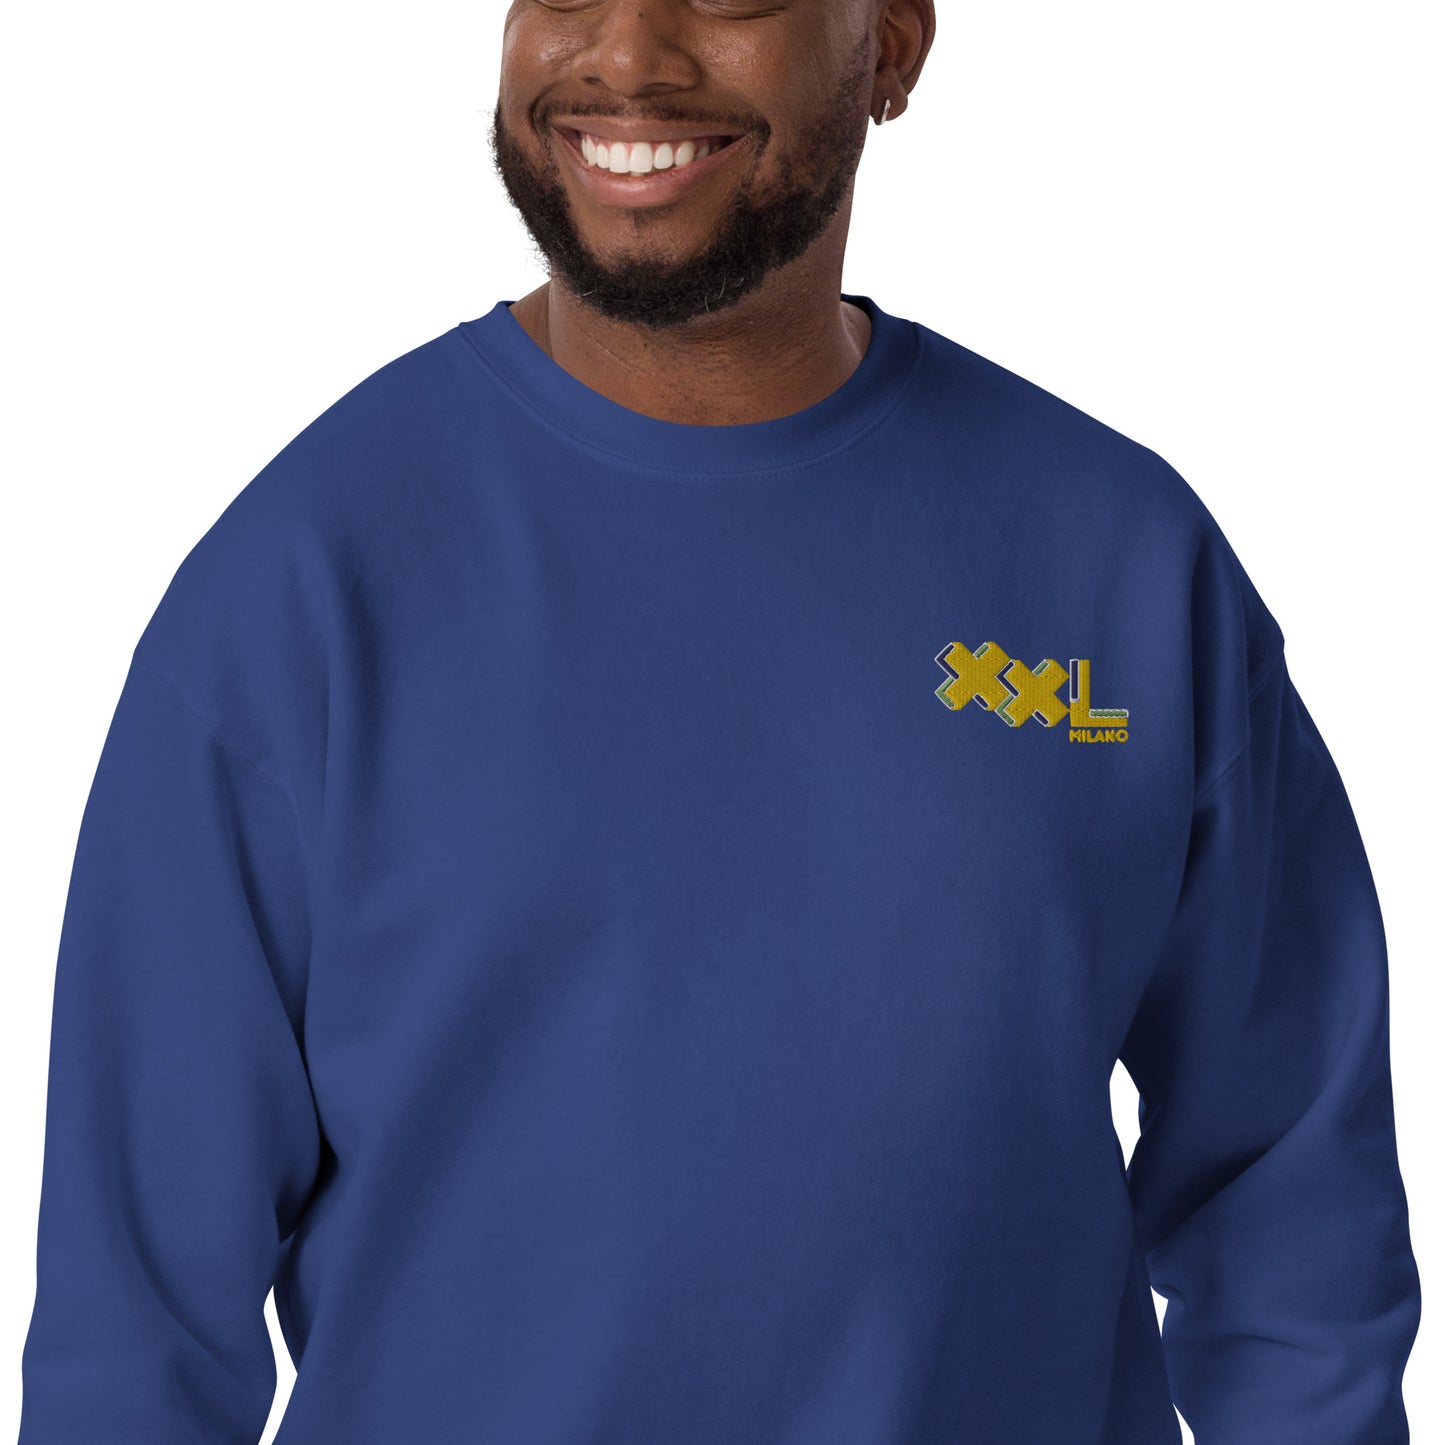 Hochwertiges Unisex-Sweatshirt mit Stickerei